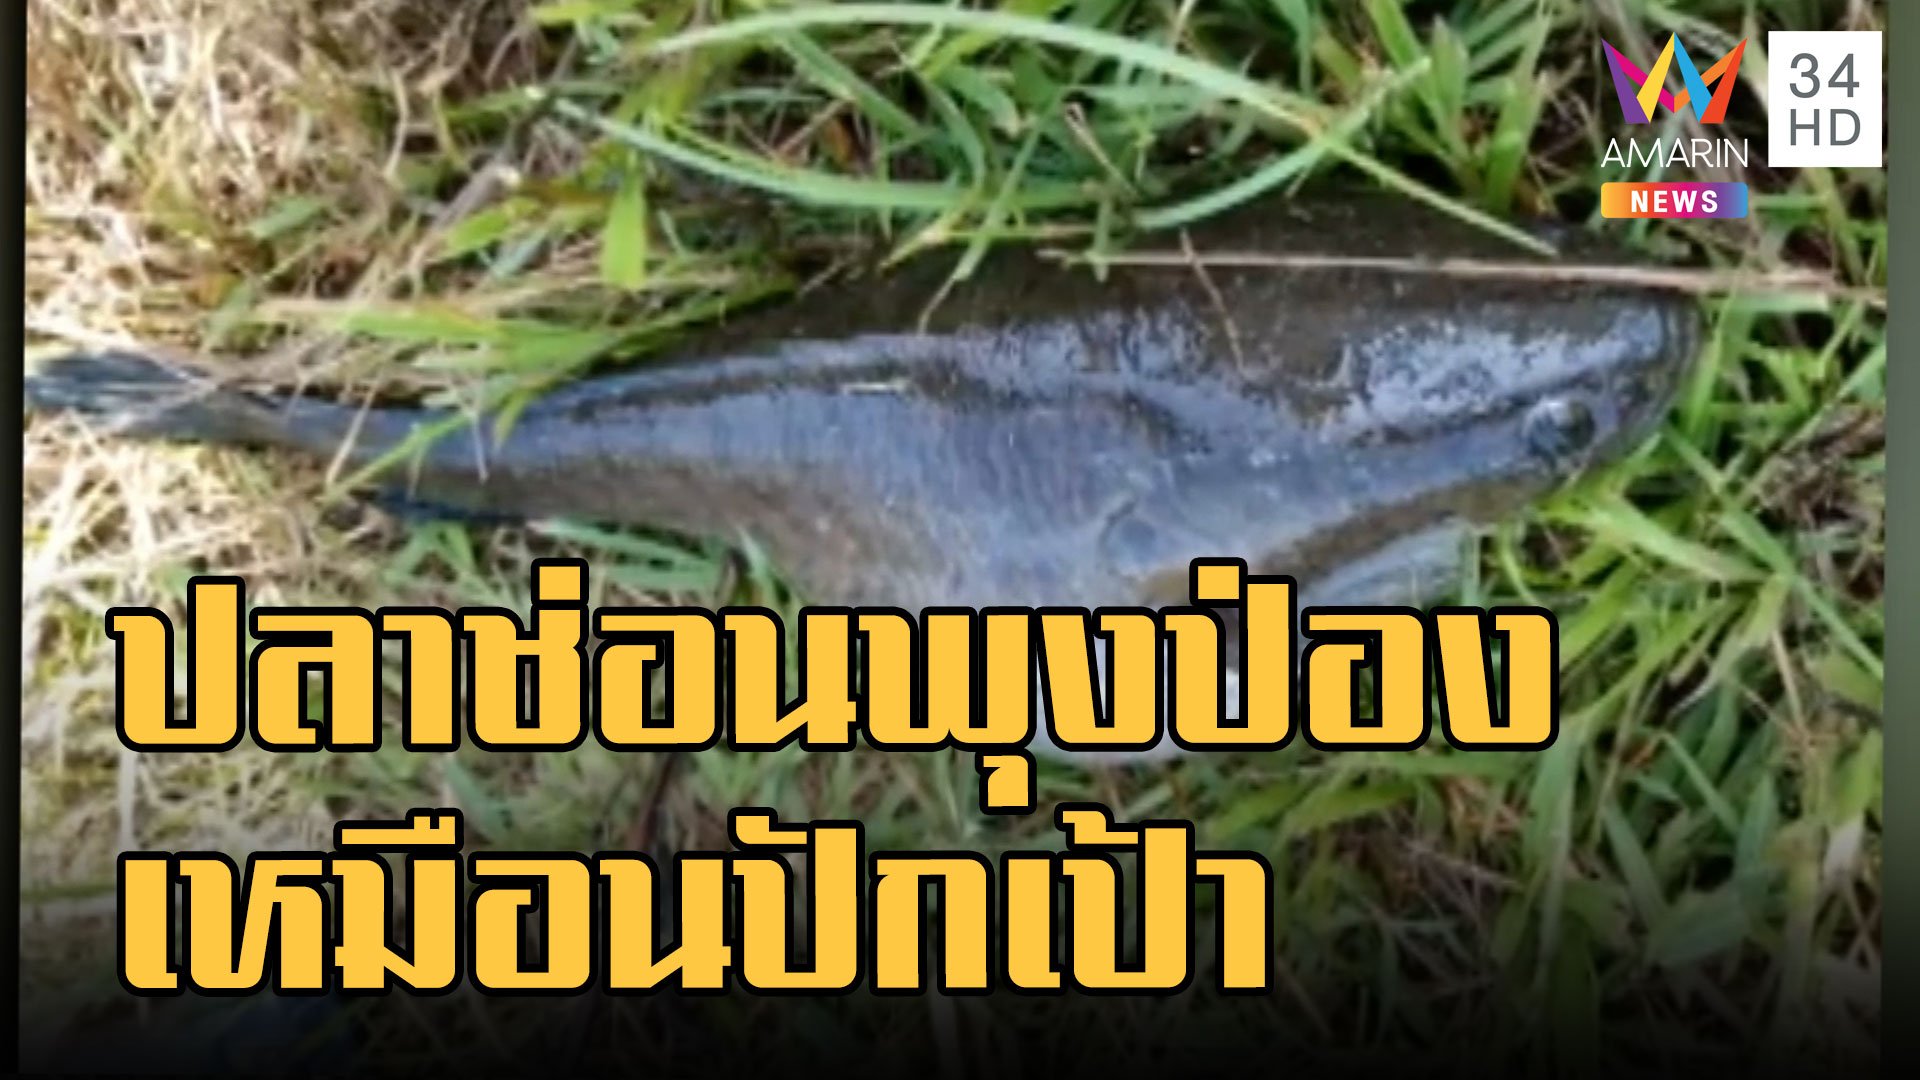 ชาวบ้านจับปลาช่อน อ้วนตุ๊บเหมือนปลาปักเป้า ที่แท้มันอ้วนเพราะแบบนี้ | ข่าวอรุณอมรินทร์ | 5 ก.ย. 65 | AMARIN TVHD34